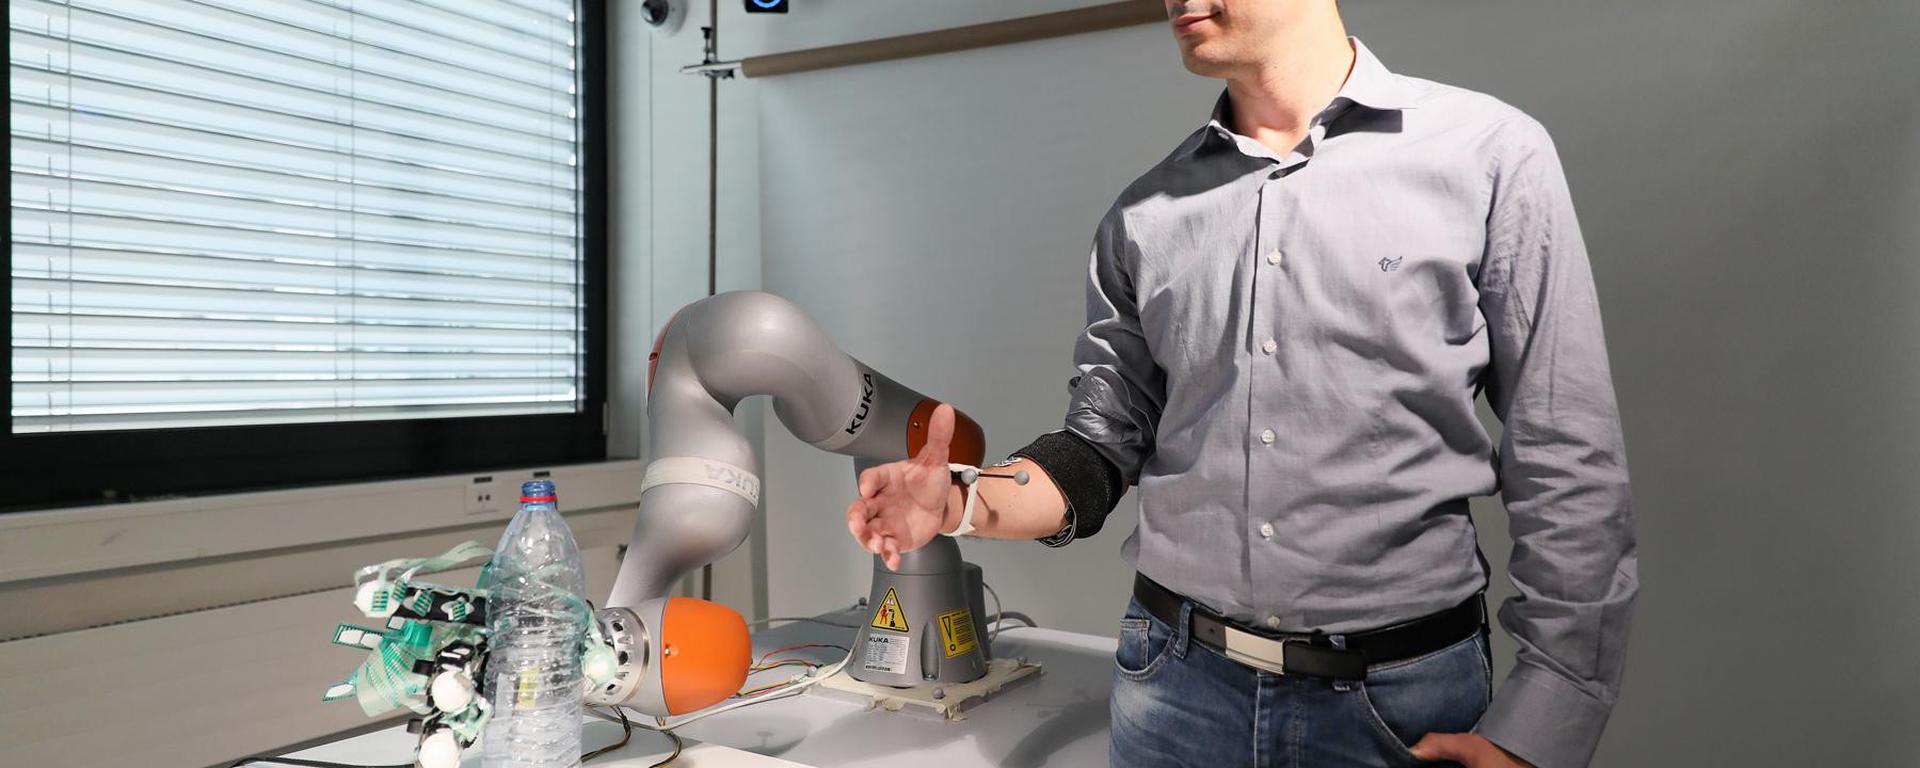 ¿Una extremidad extra? Científicos están desarrollando un tercer brazo robótico para ayudar con las tareas diarias